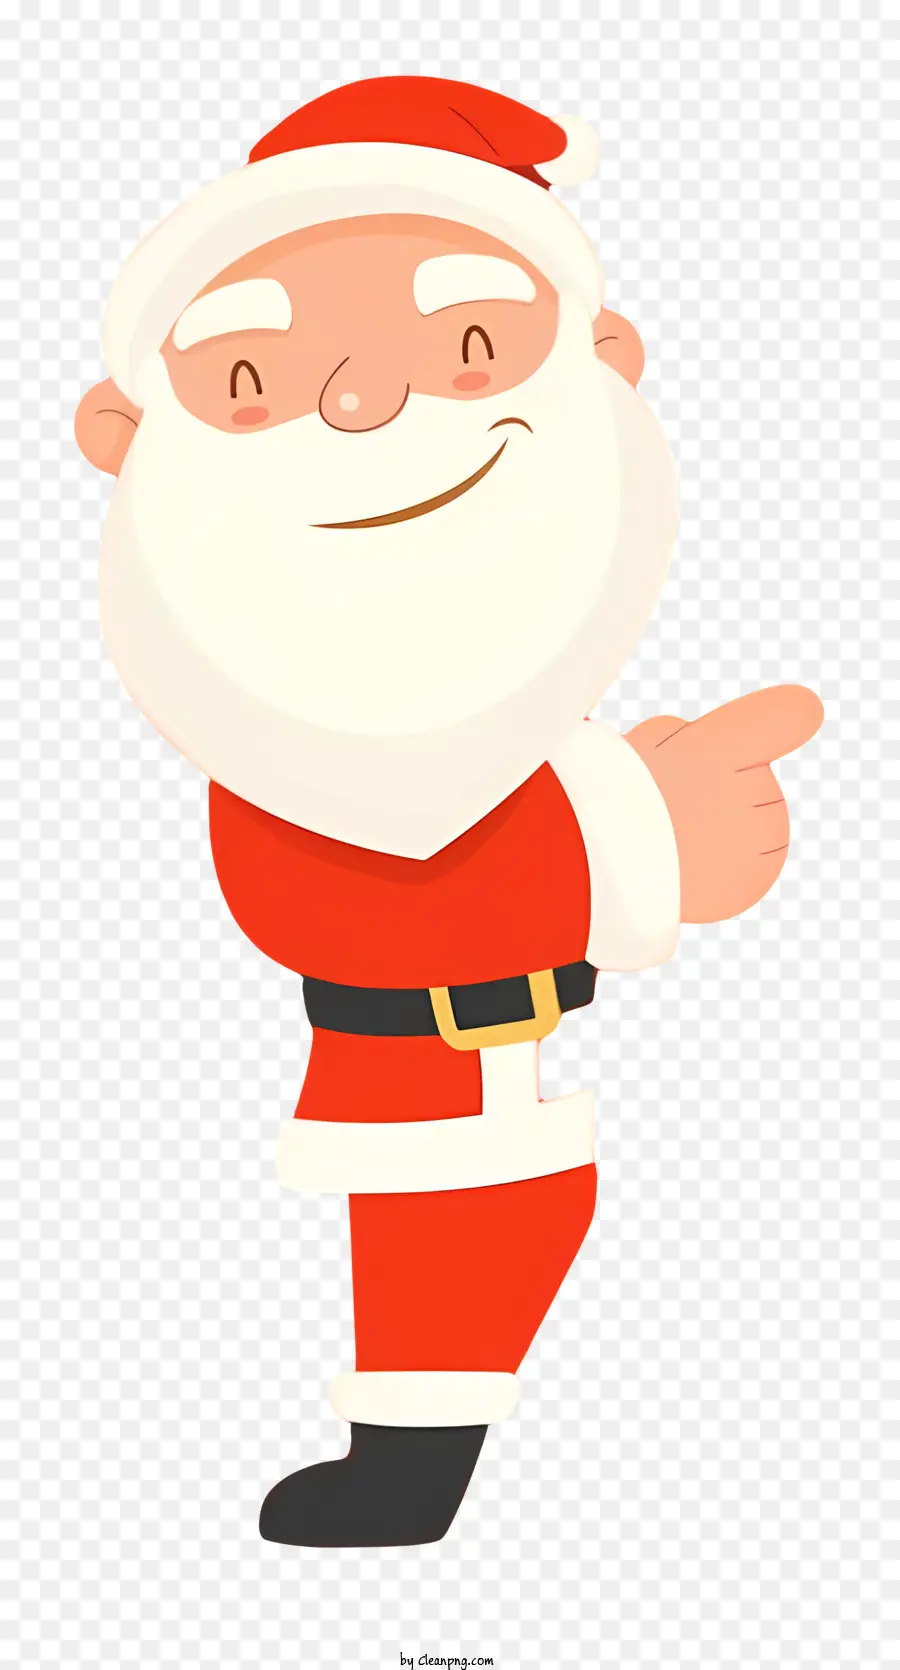 Santa Claus Cartoon - Cartoon Santa Claus, der auf schwarzen Hintergrund zeigt